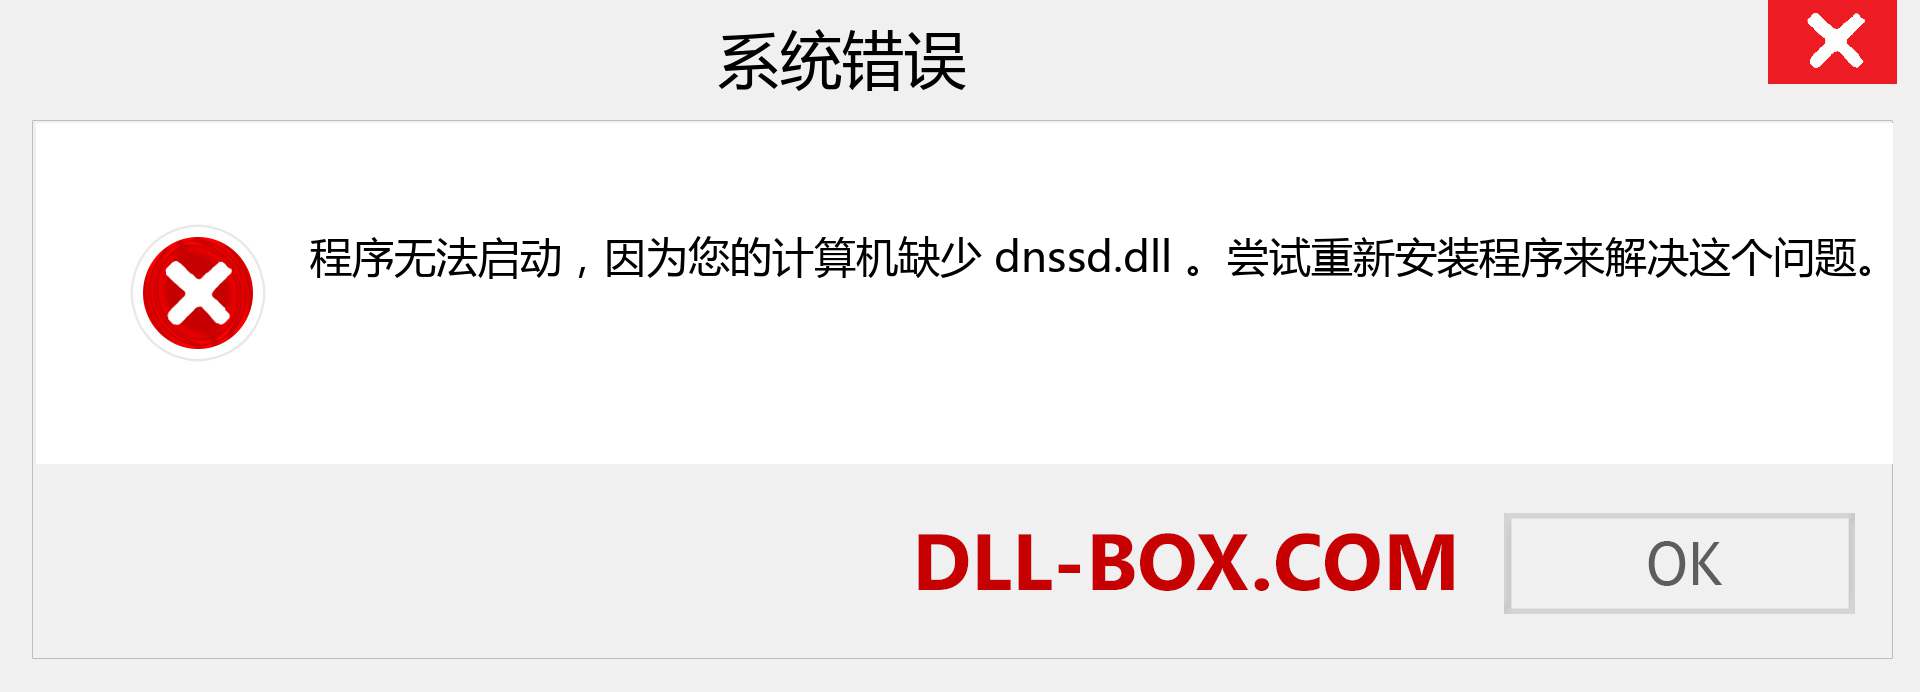 dnssd.dll 文件丢失？。 适用于 Windows 7、8、10 的下载 - 修复 Windows、照片、图像上的 dnssd dll 丢失错误